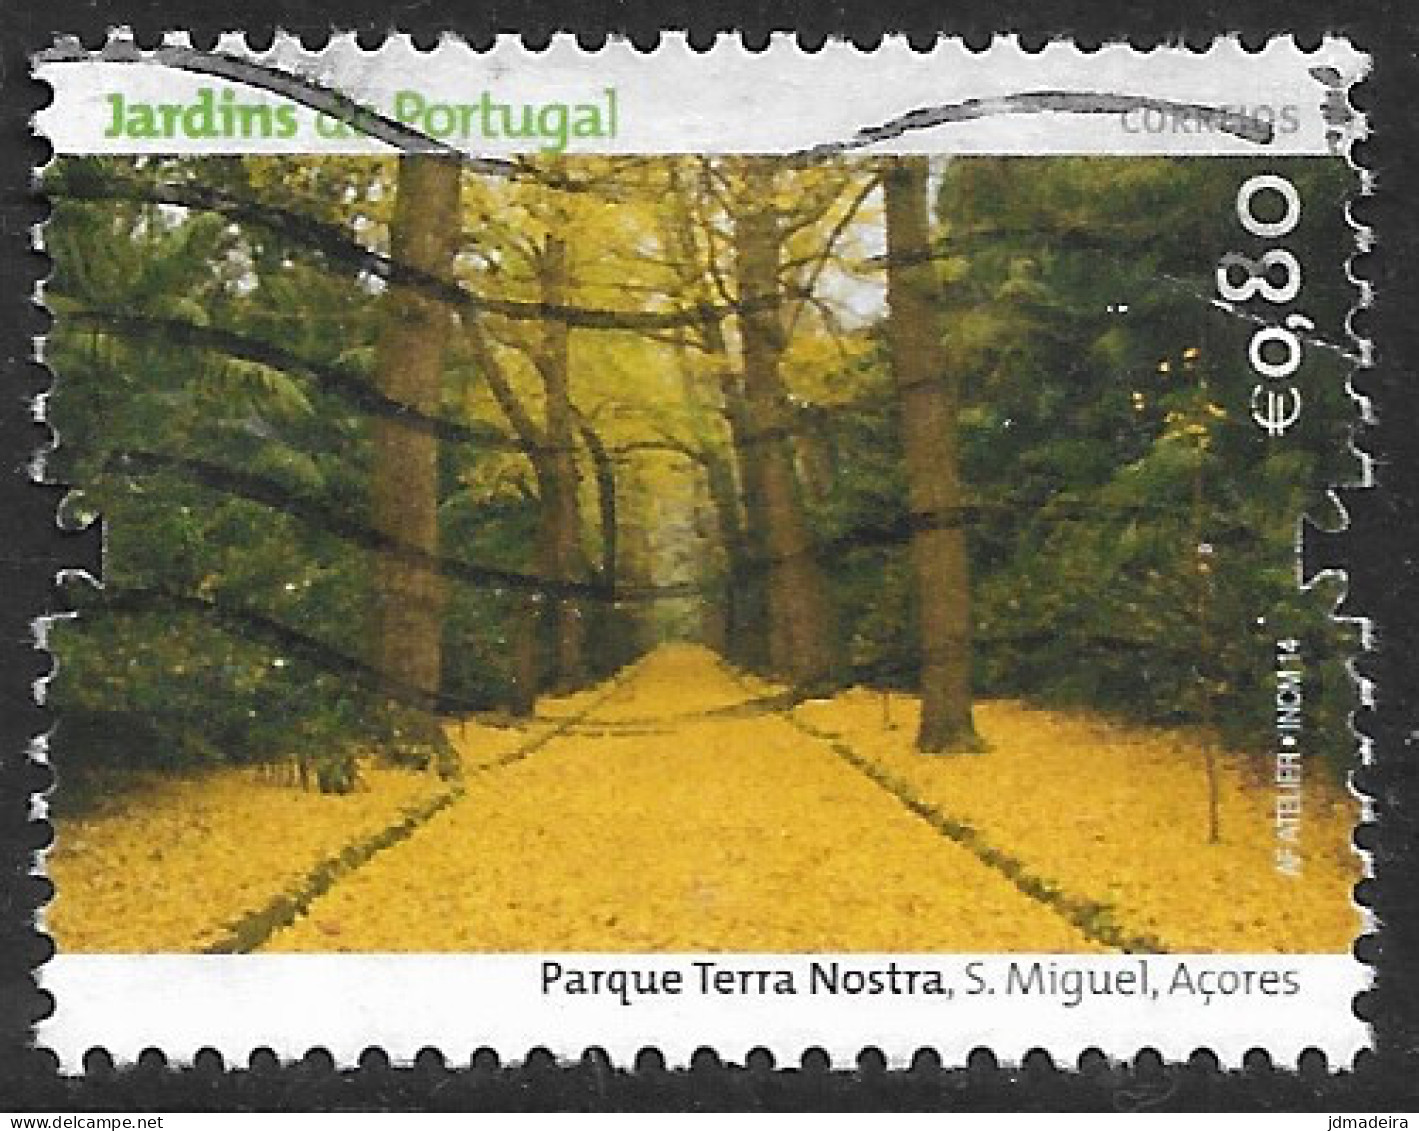 Portugal – 2014 Gardens 0,80 Used Stamp - Oblitérés